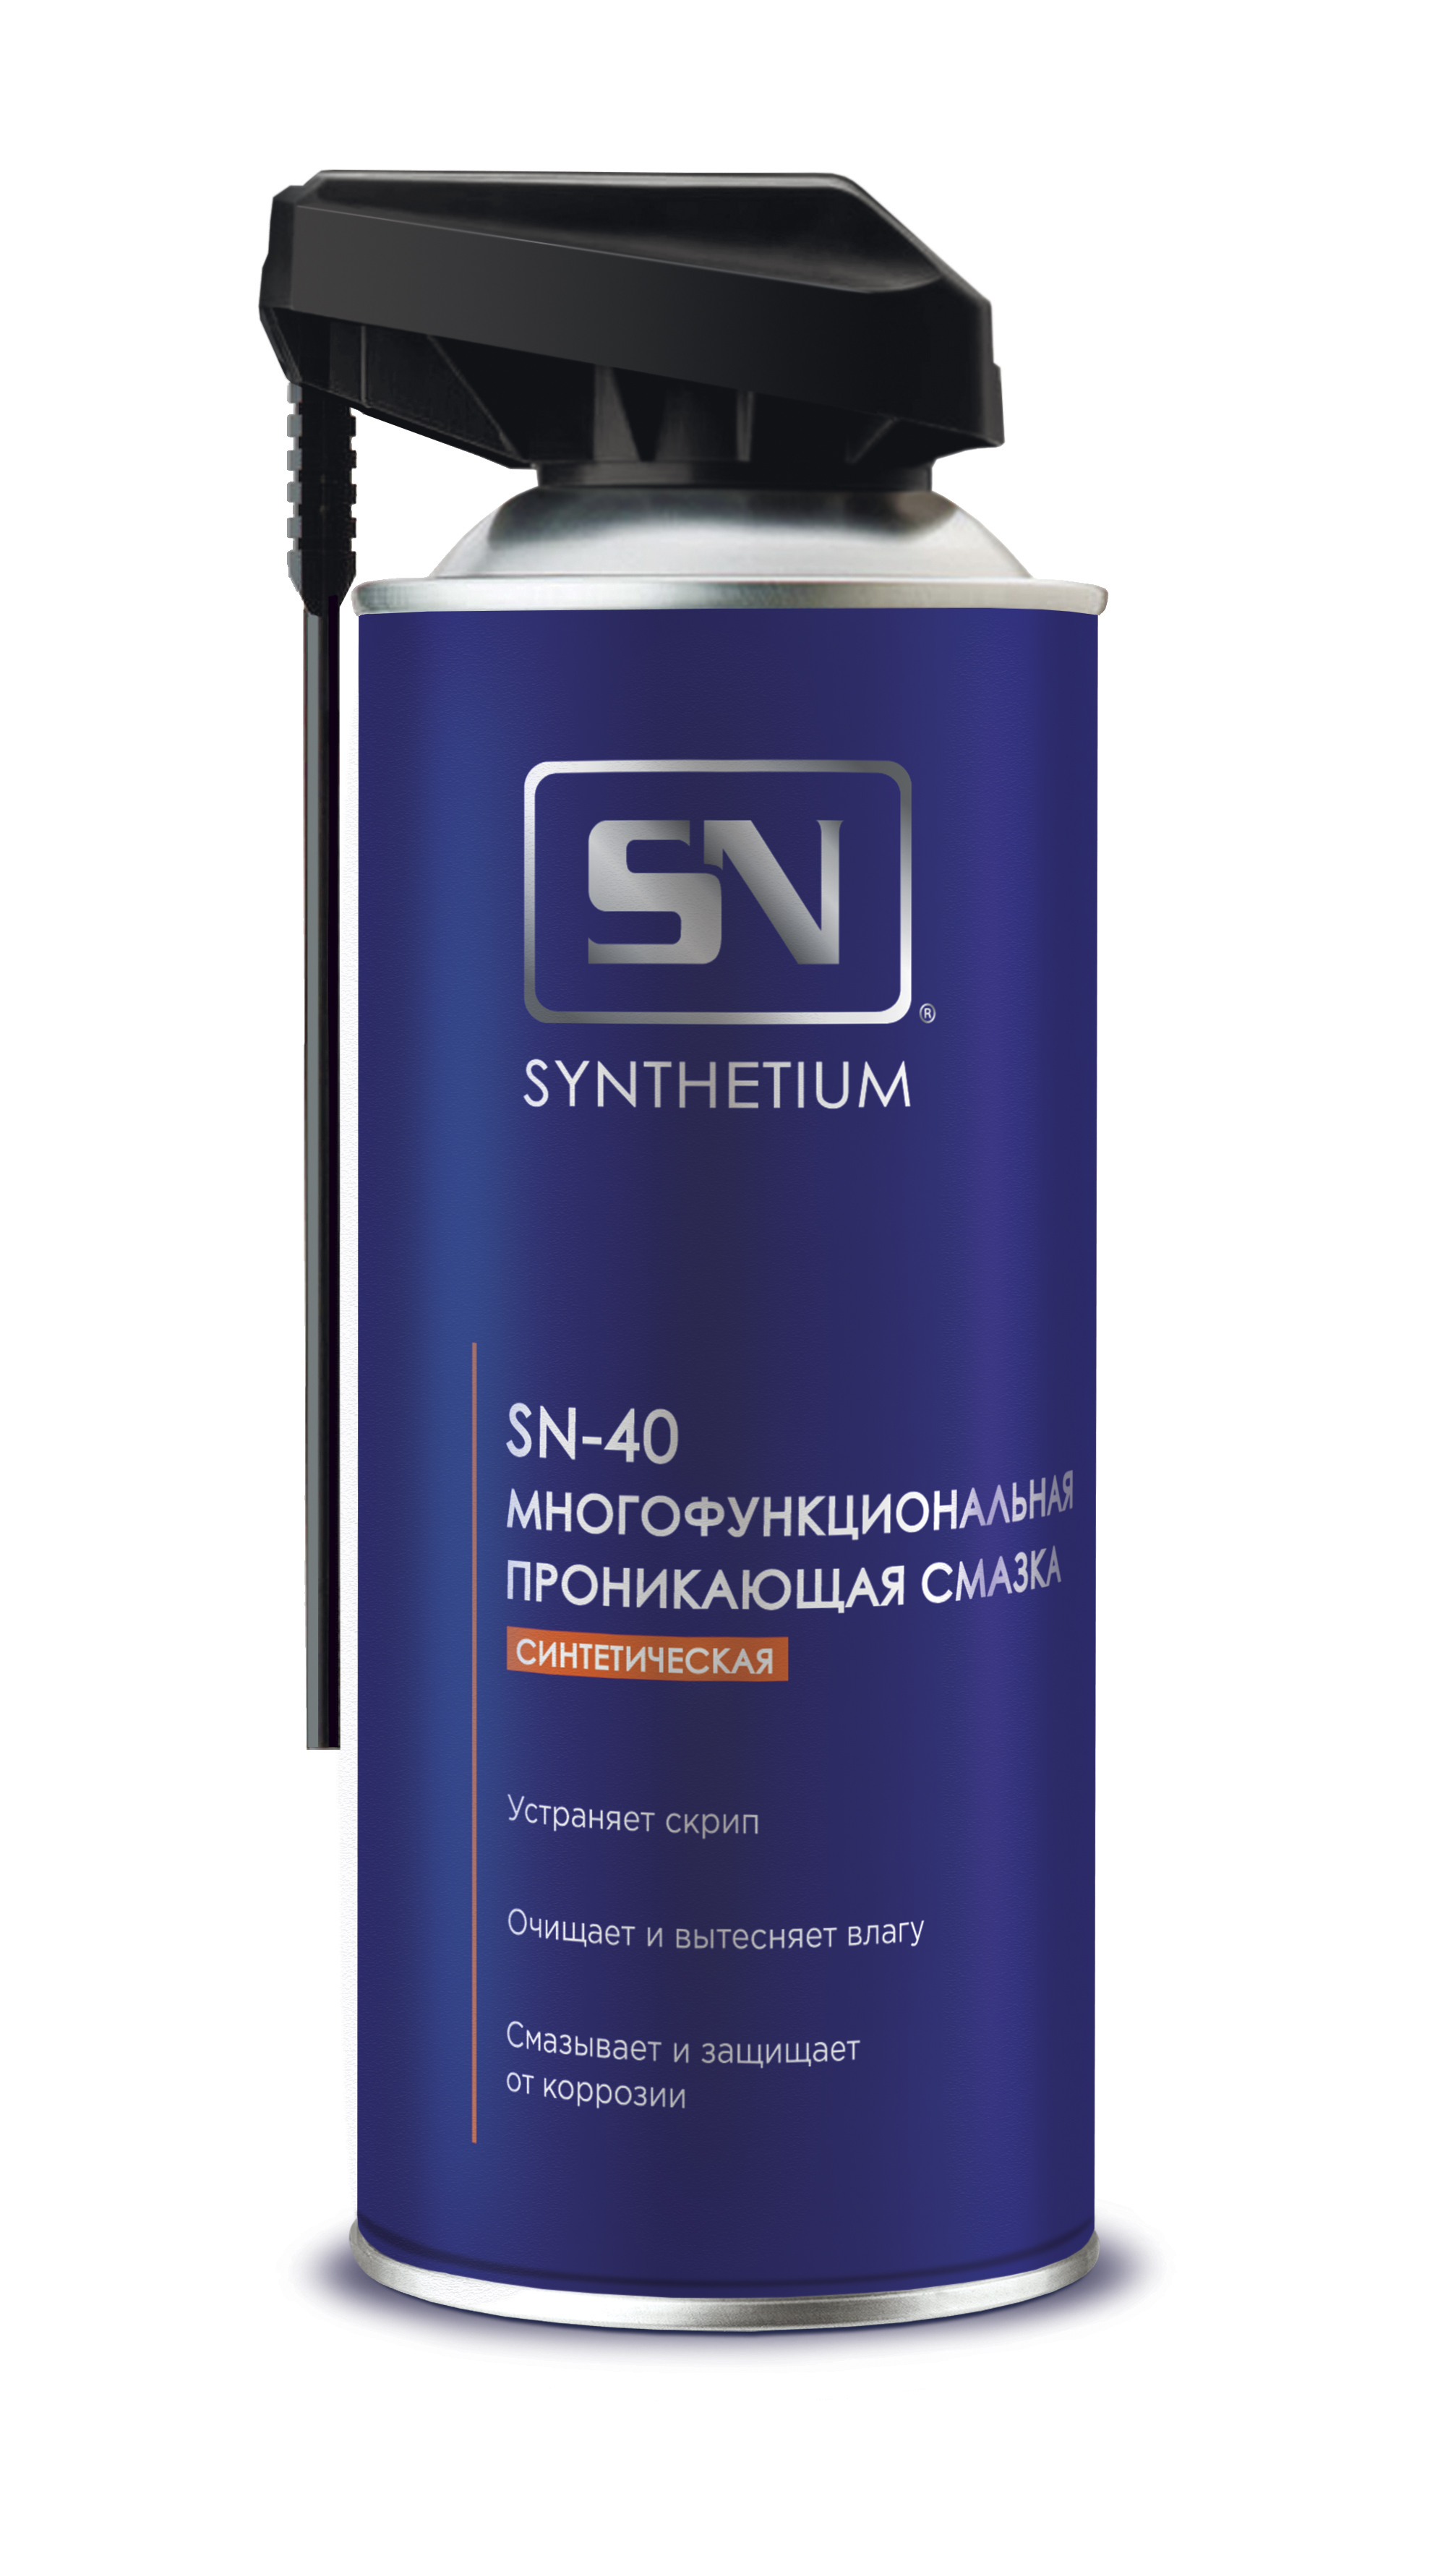 Смазка ASTROHIM SN многофункциональная проникающая серия "Synthetium" SN-40, аэрозоль со смарт-распылителем, 520 мл 520 мл. SN4005